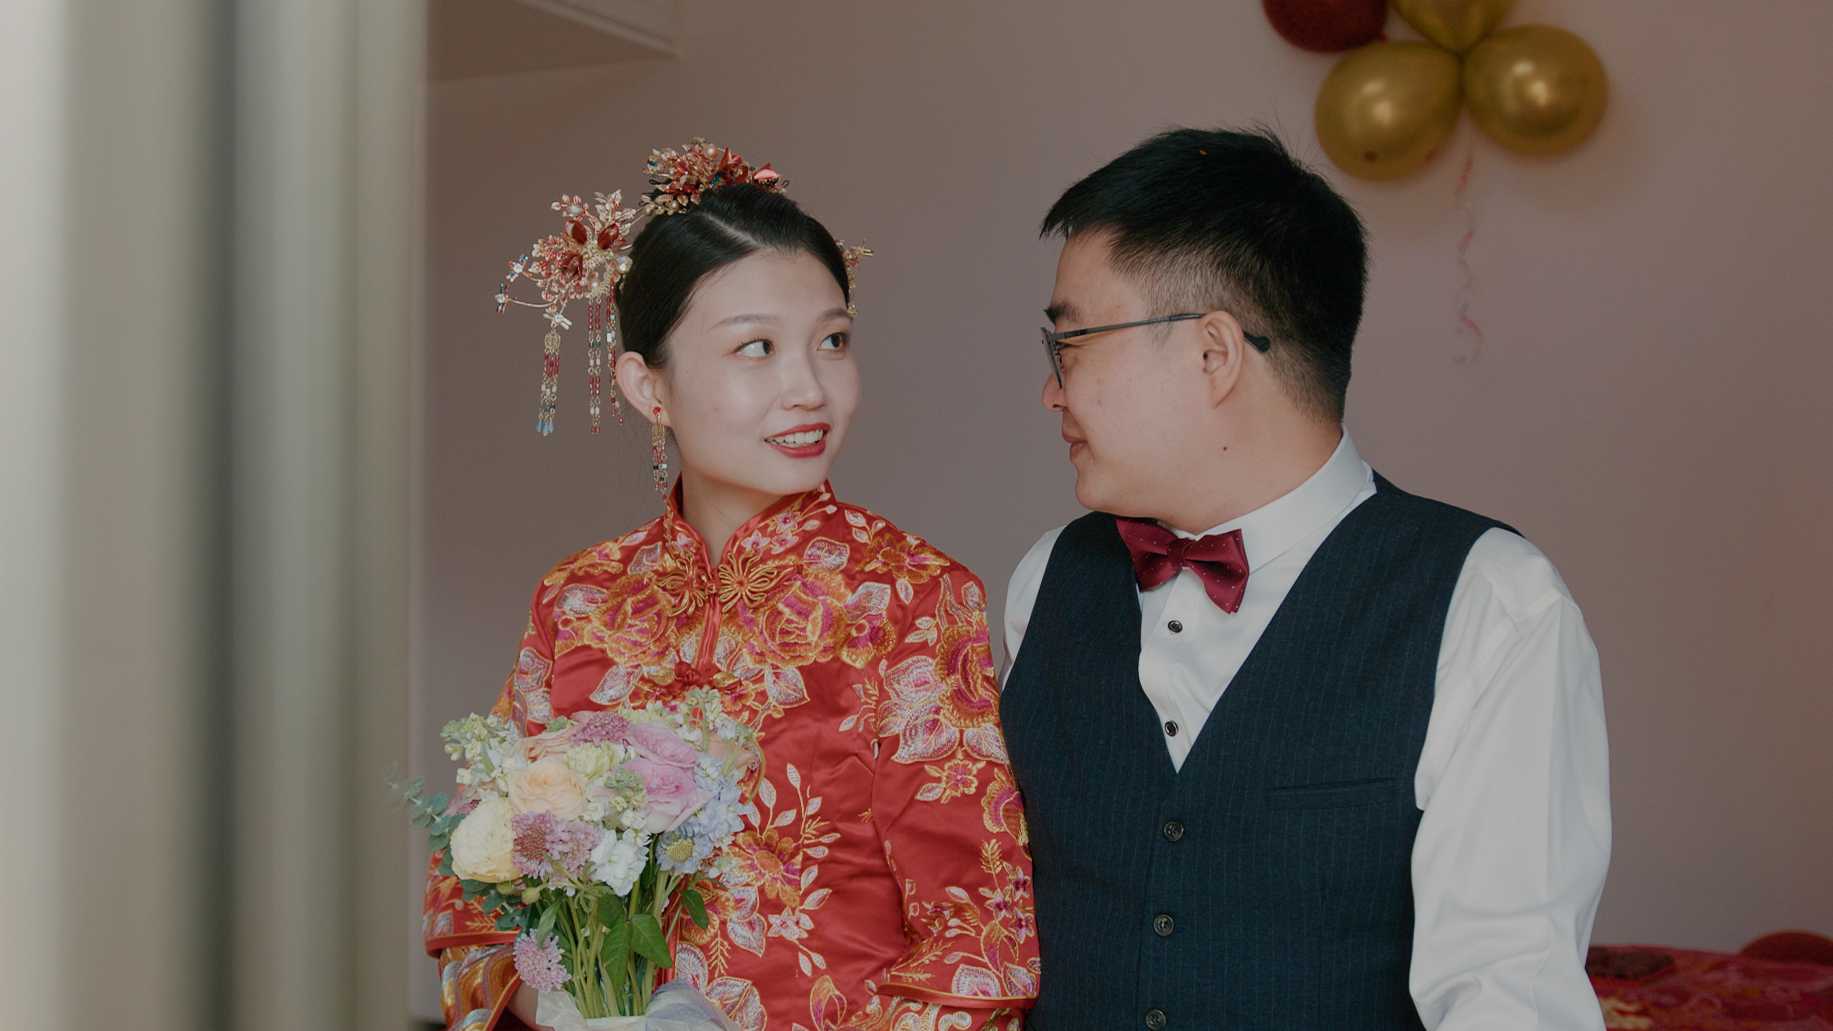 【漫唯汀】Xin & Liu丨Oct,1 2021丨婚礼记录